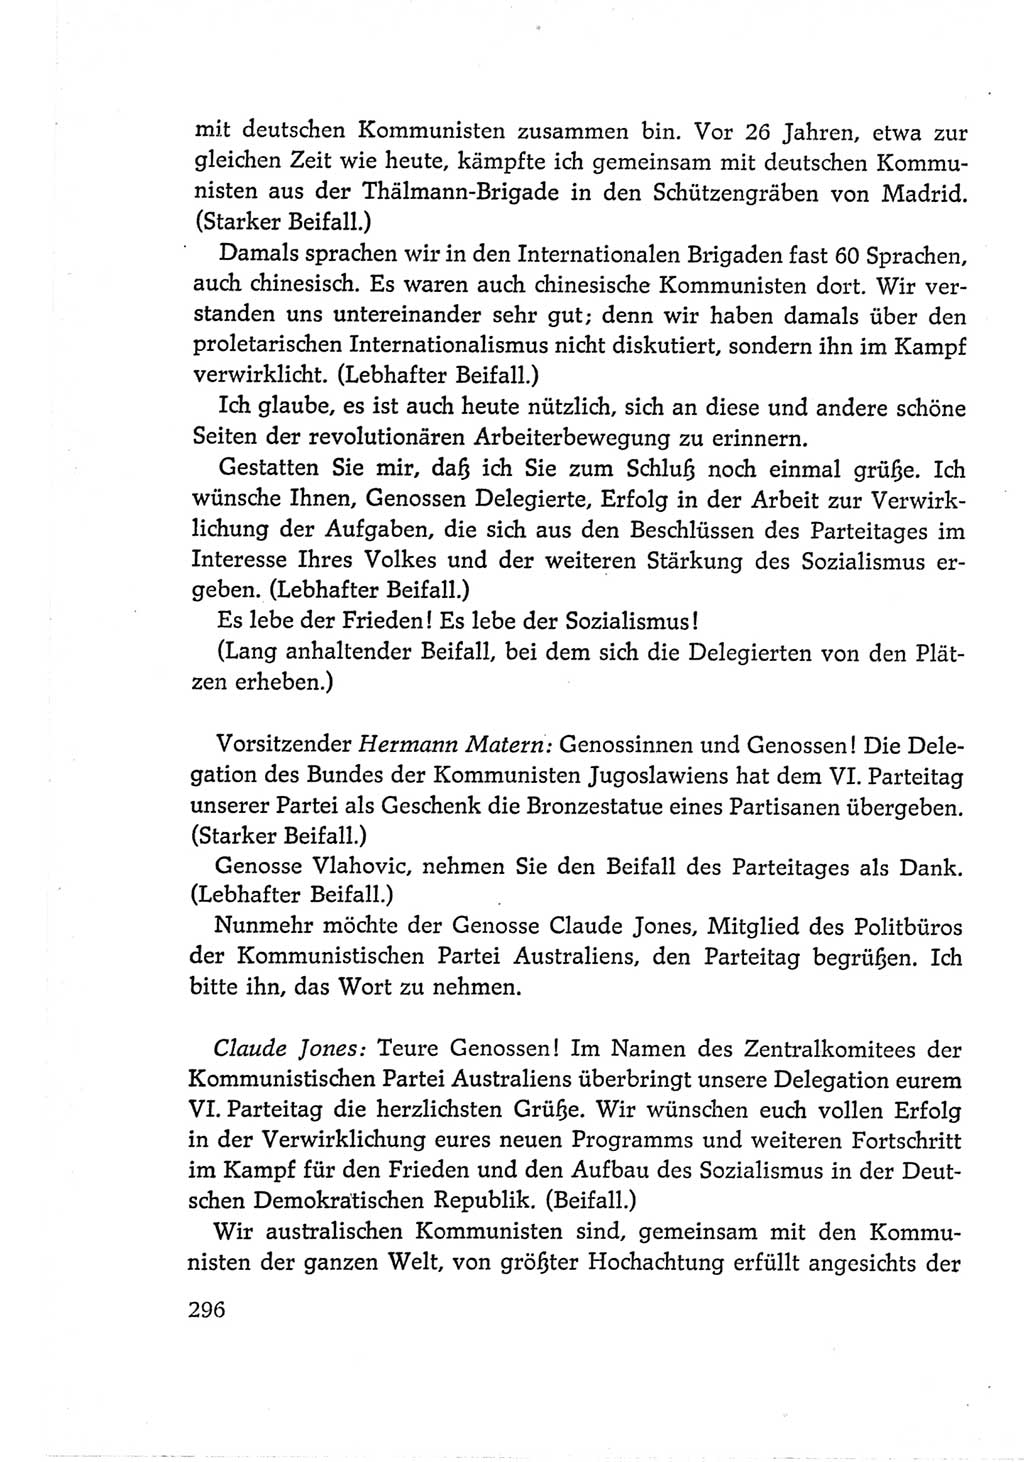 Protokoll der Verhandlungen des Ⅵ. Parteitages der Sozialistischen Einheitspartei Deutschlands (SED) [Deutsche Demokratische Republik (DDR)] 1963, Band Ⅱ, Seite 296 (Prot. Verh. Ⅵ. PT SED DDR 1963, Bd. Ⅱ, S. 296)